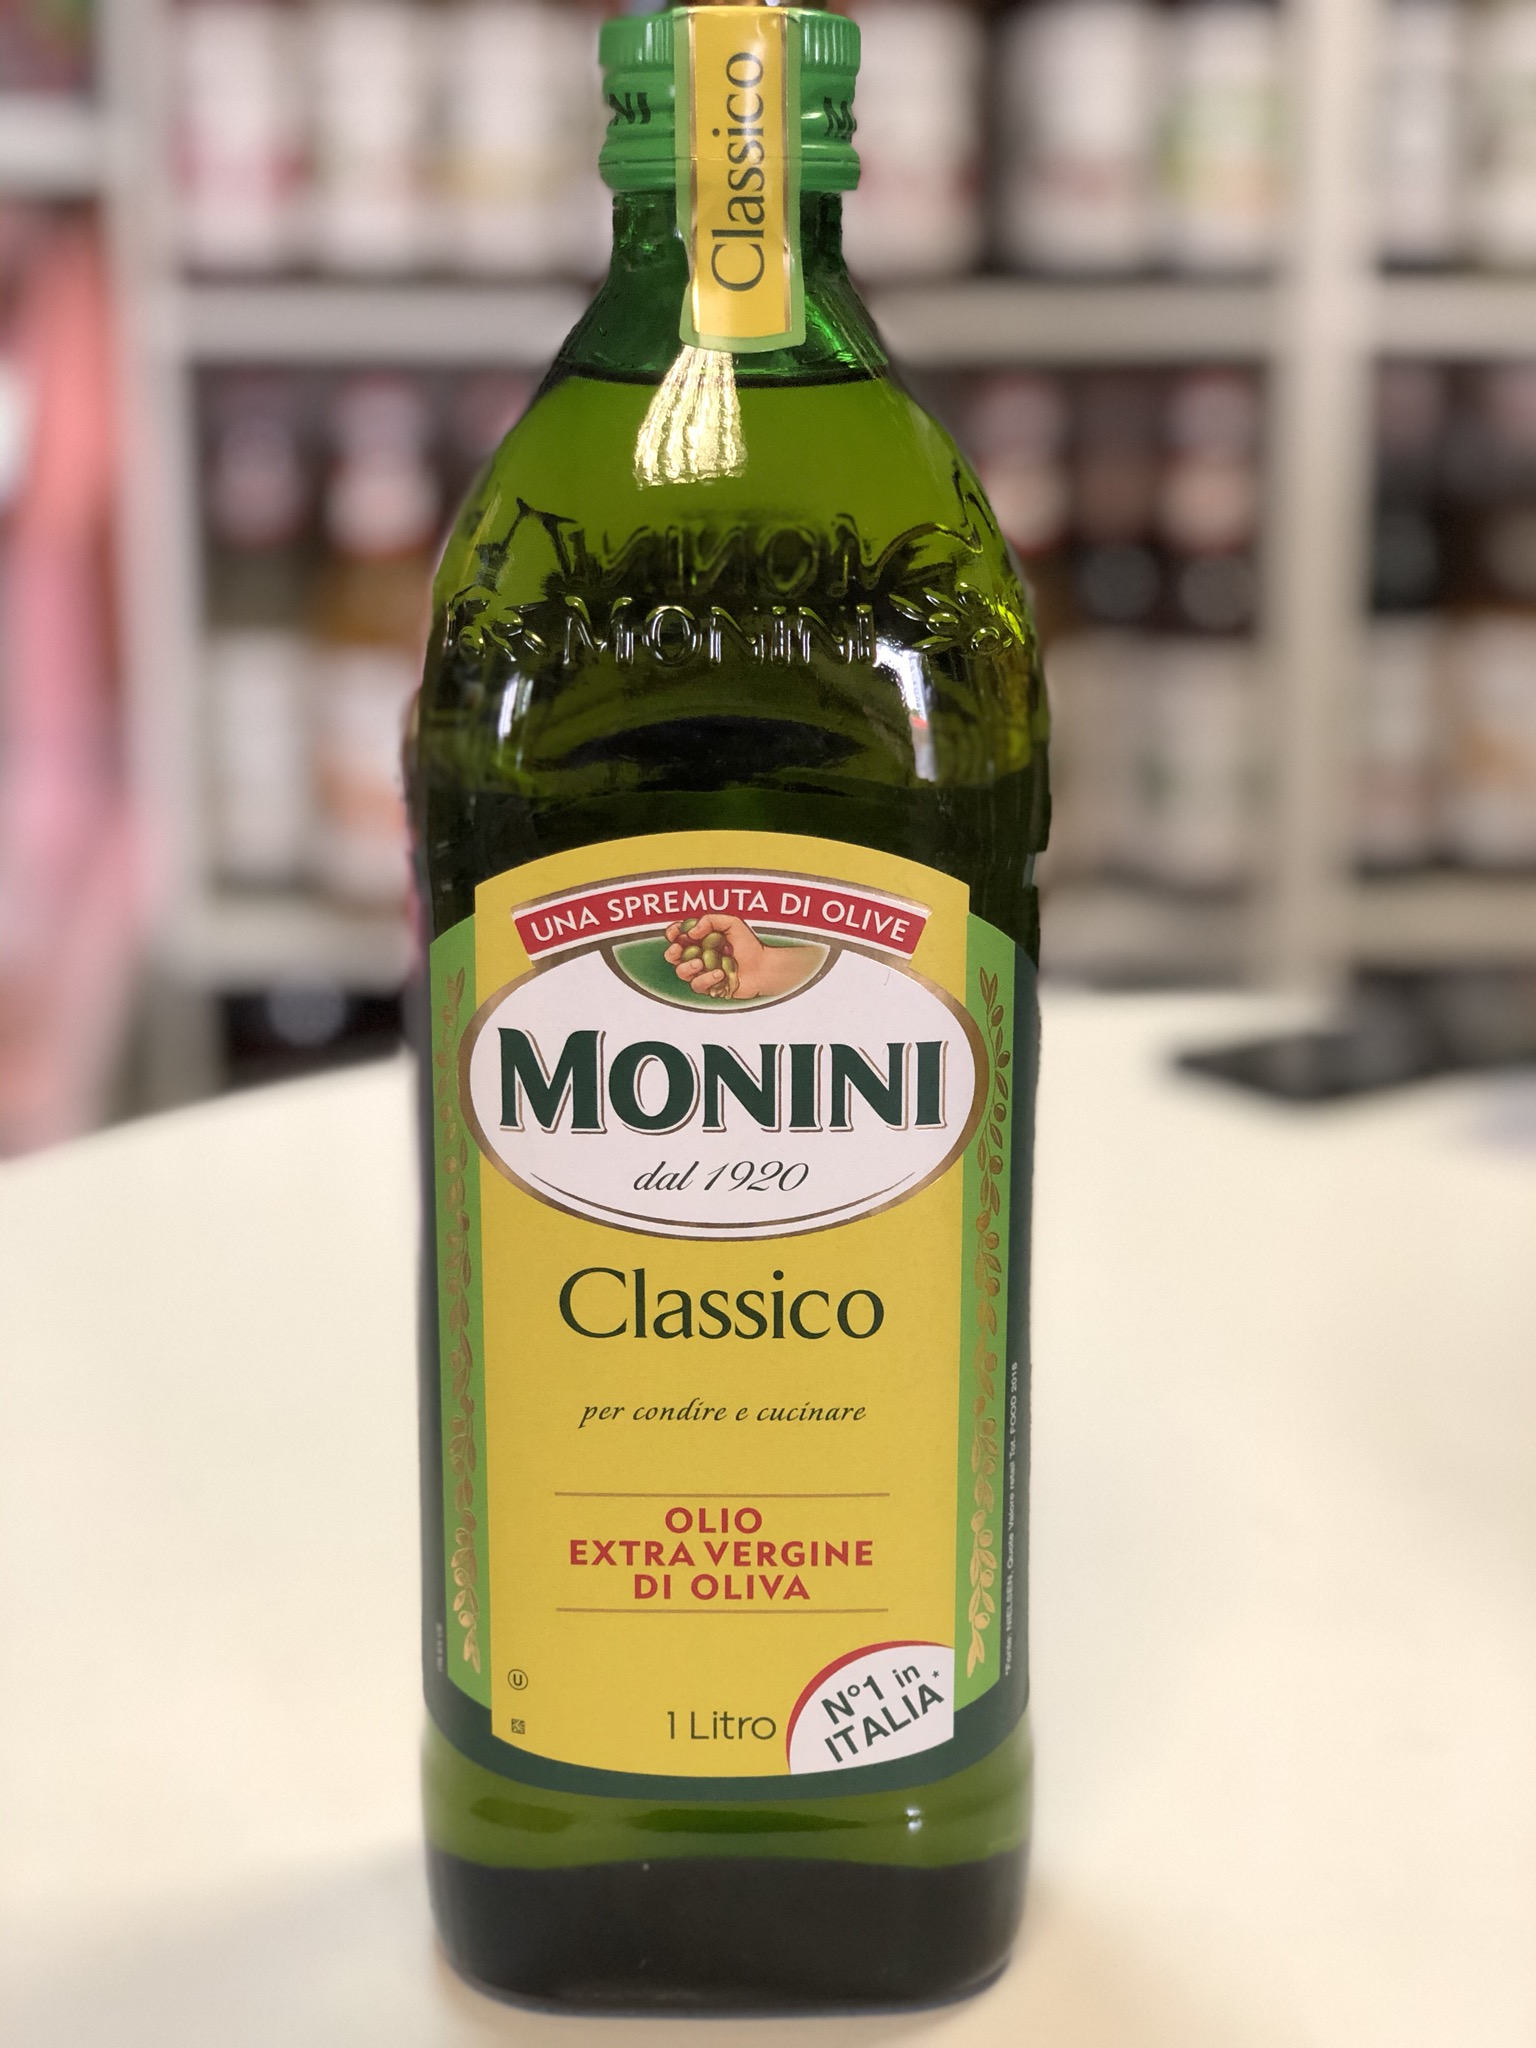 Масло оливковое monini купить. Масло оливковое Monini Extra vergine Classico, 1л. Monini Classico оливковое масло 1 литр. Масло оливковое Монини 1 литр. Monini масло оливковое нерафинированное.